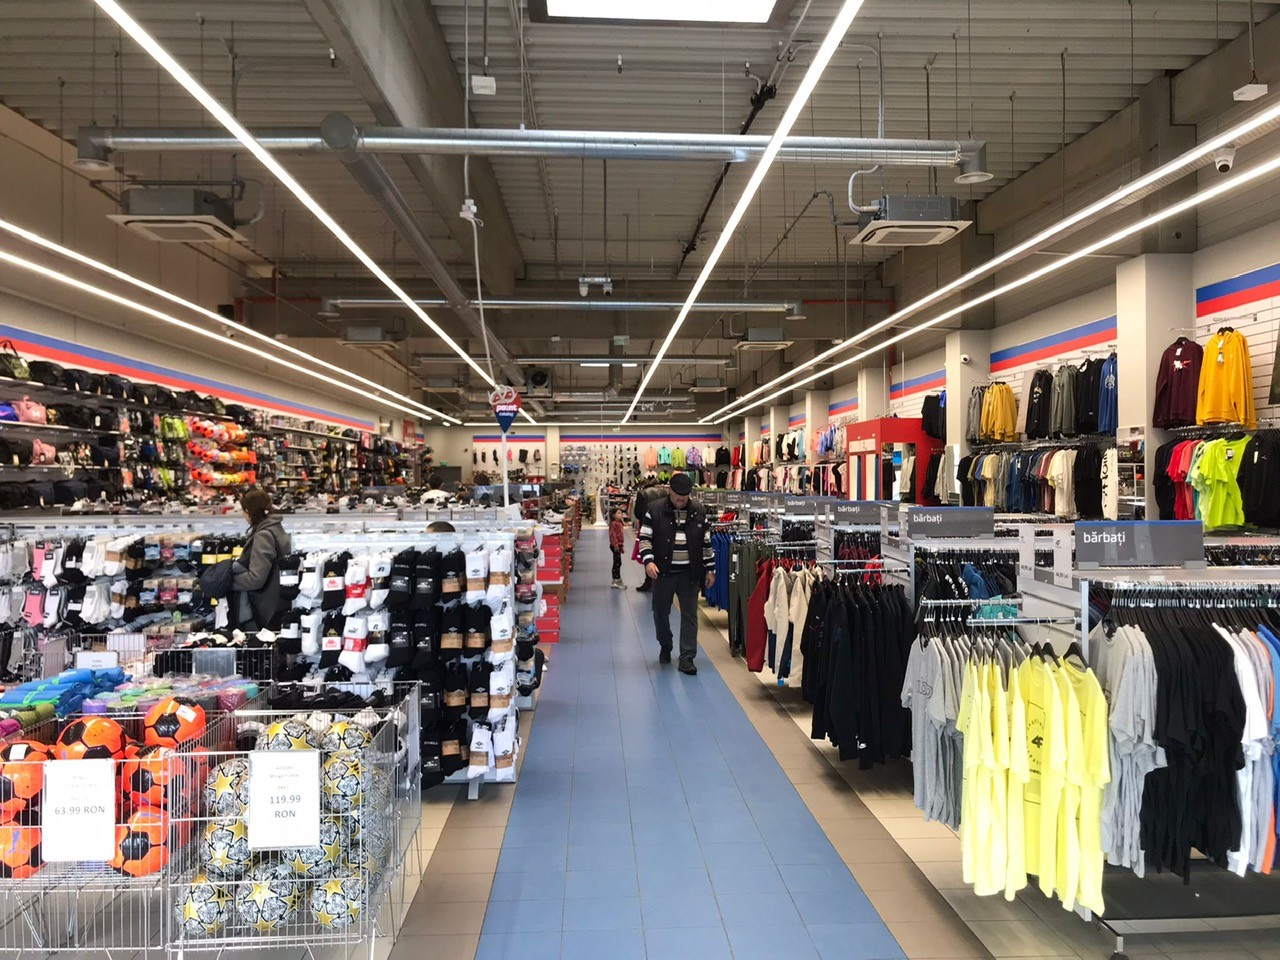 Sportisimo Târgu Mureș : Retail park Kaufland